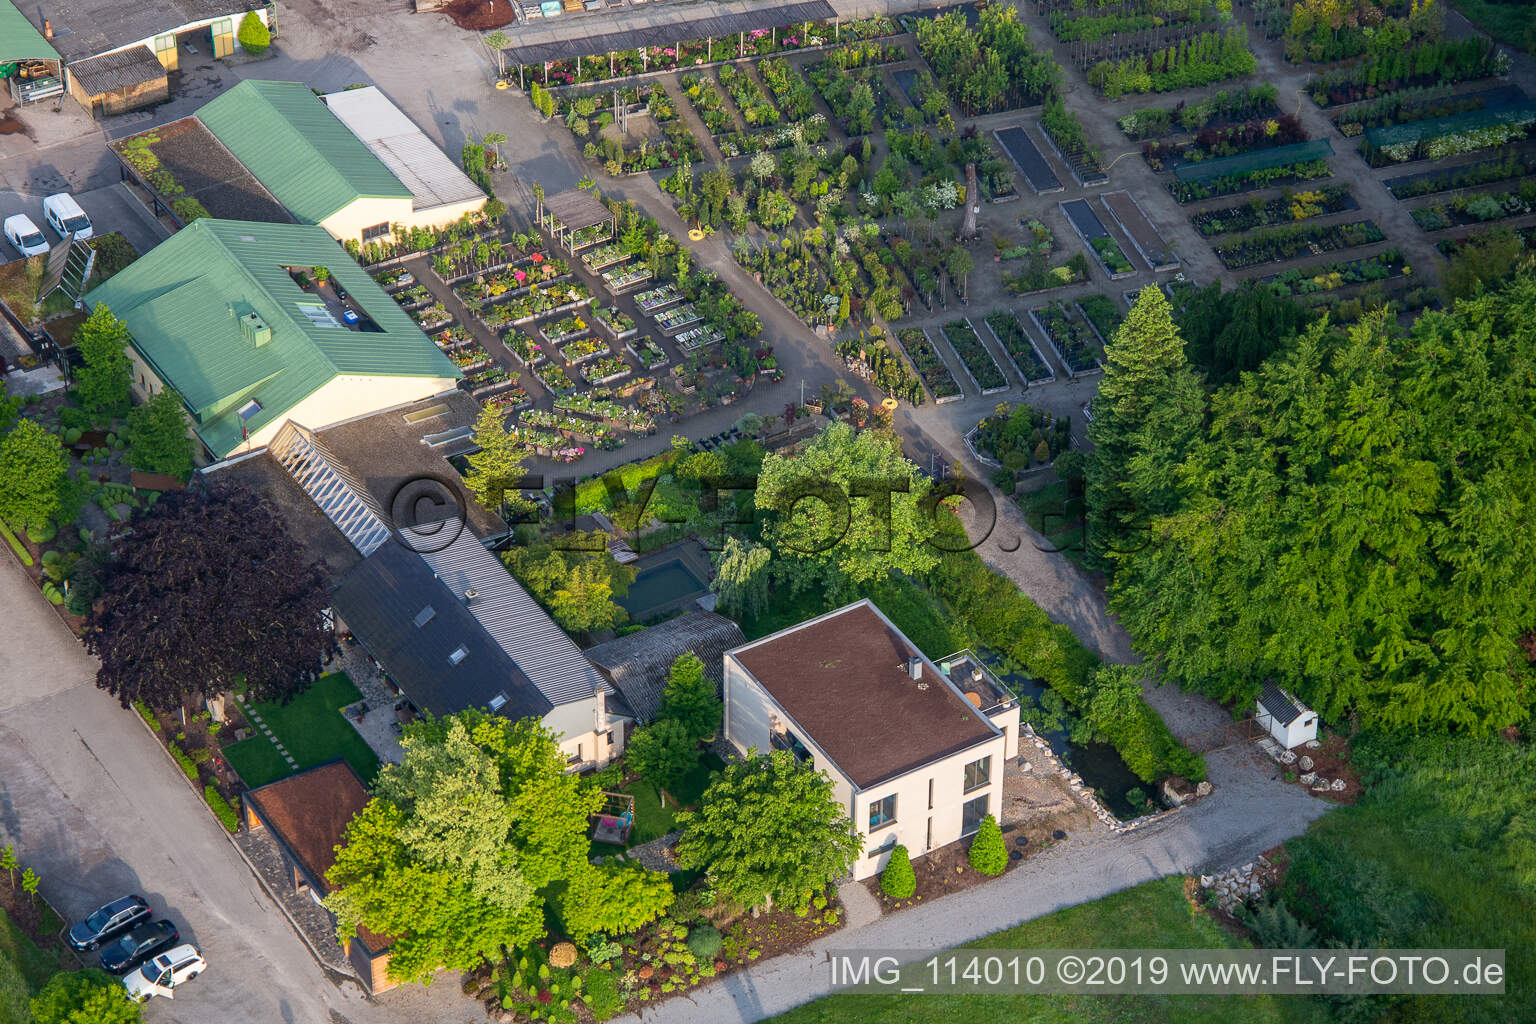 Bienwald Baumschule / Greentec in Berg im Bundesland Rheinland-Pfalz, Deutschland von oben gesehen